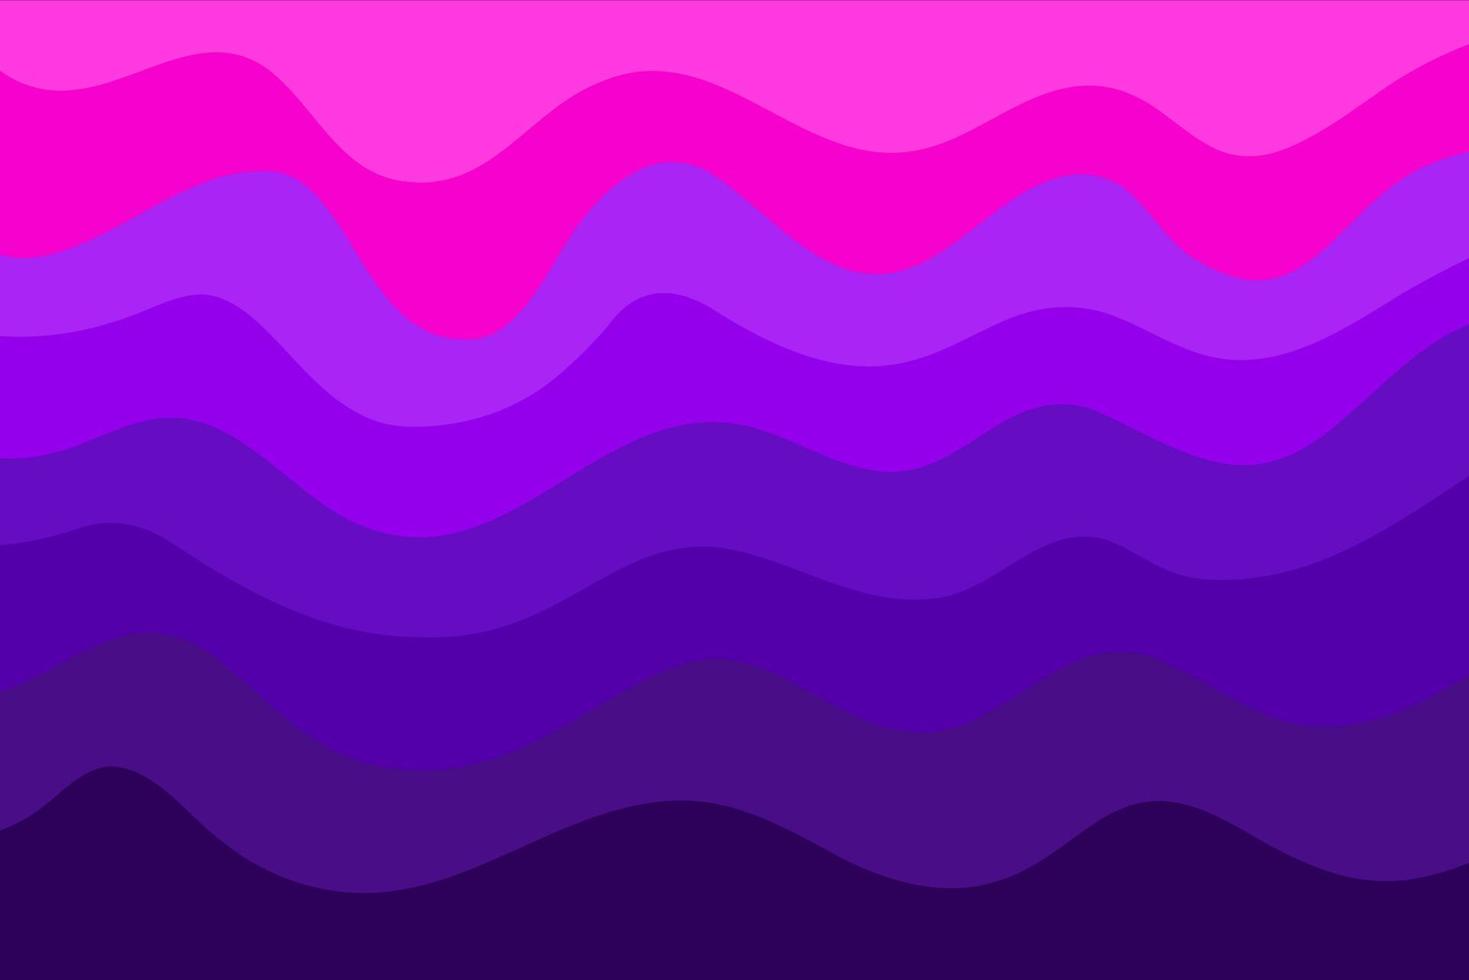 Bạn đang tìm kiếm một chủ đề sóng màu tím hồng đầy nghệ thuật và sử dụng màu sắc đầy thu hút? Đừng bỏ lỡ bức tranh này đến từ chuyên gia thiết kế của chúng tôi. Sự kết hợp hoàn hảo giữa hai màu sắc kinh điển này sẽ khiến màn hình của bạn trở nên thật độc đáo và nổi bật.